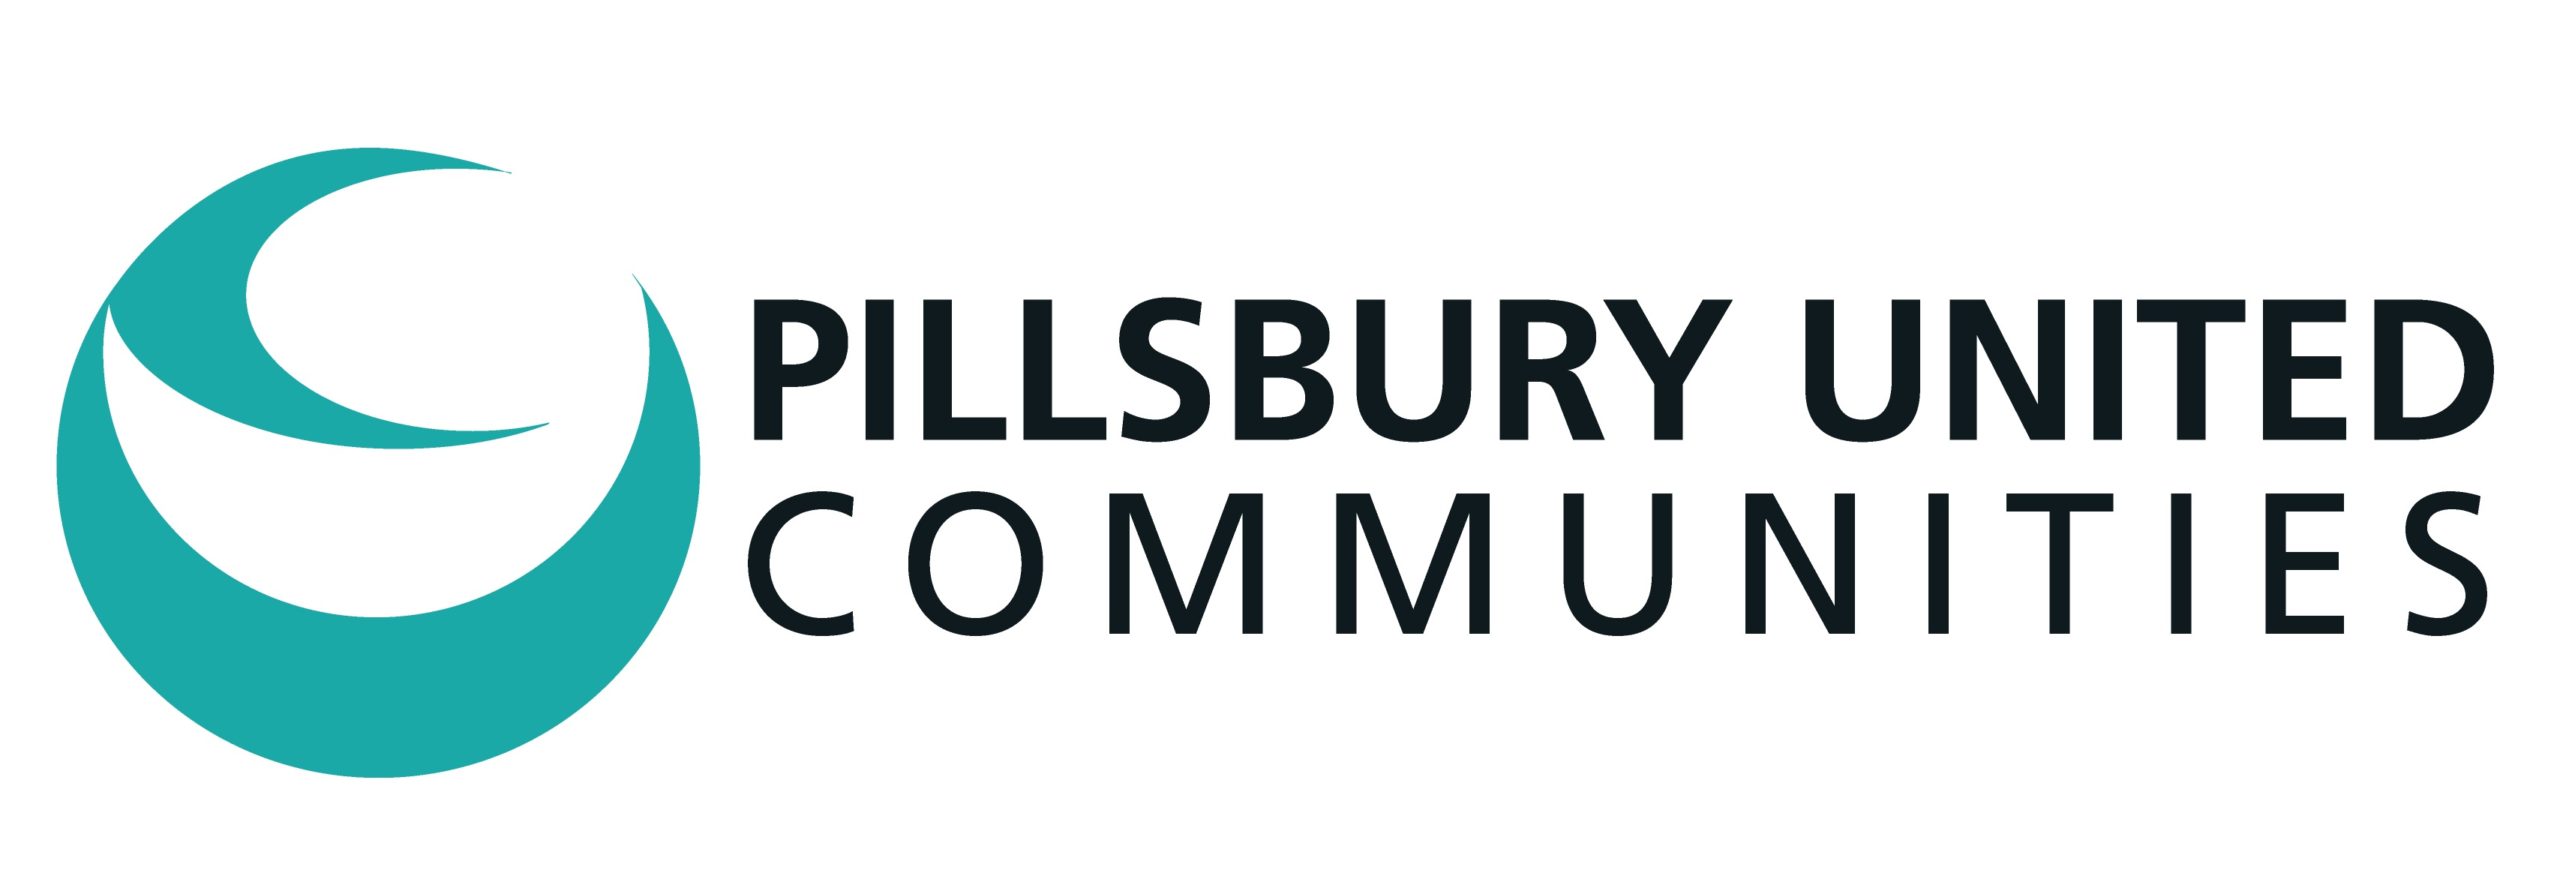 Pillsbury United Communities